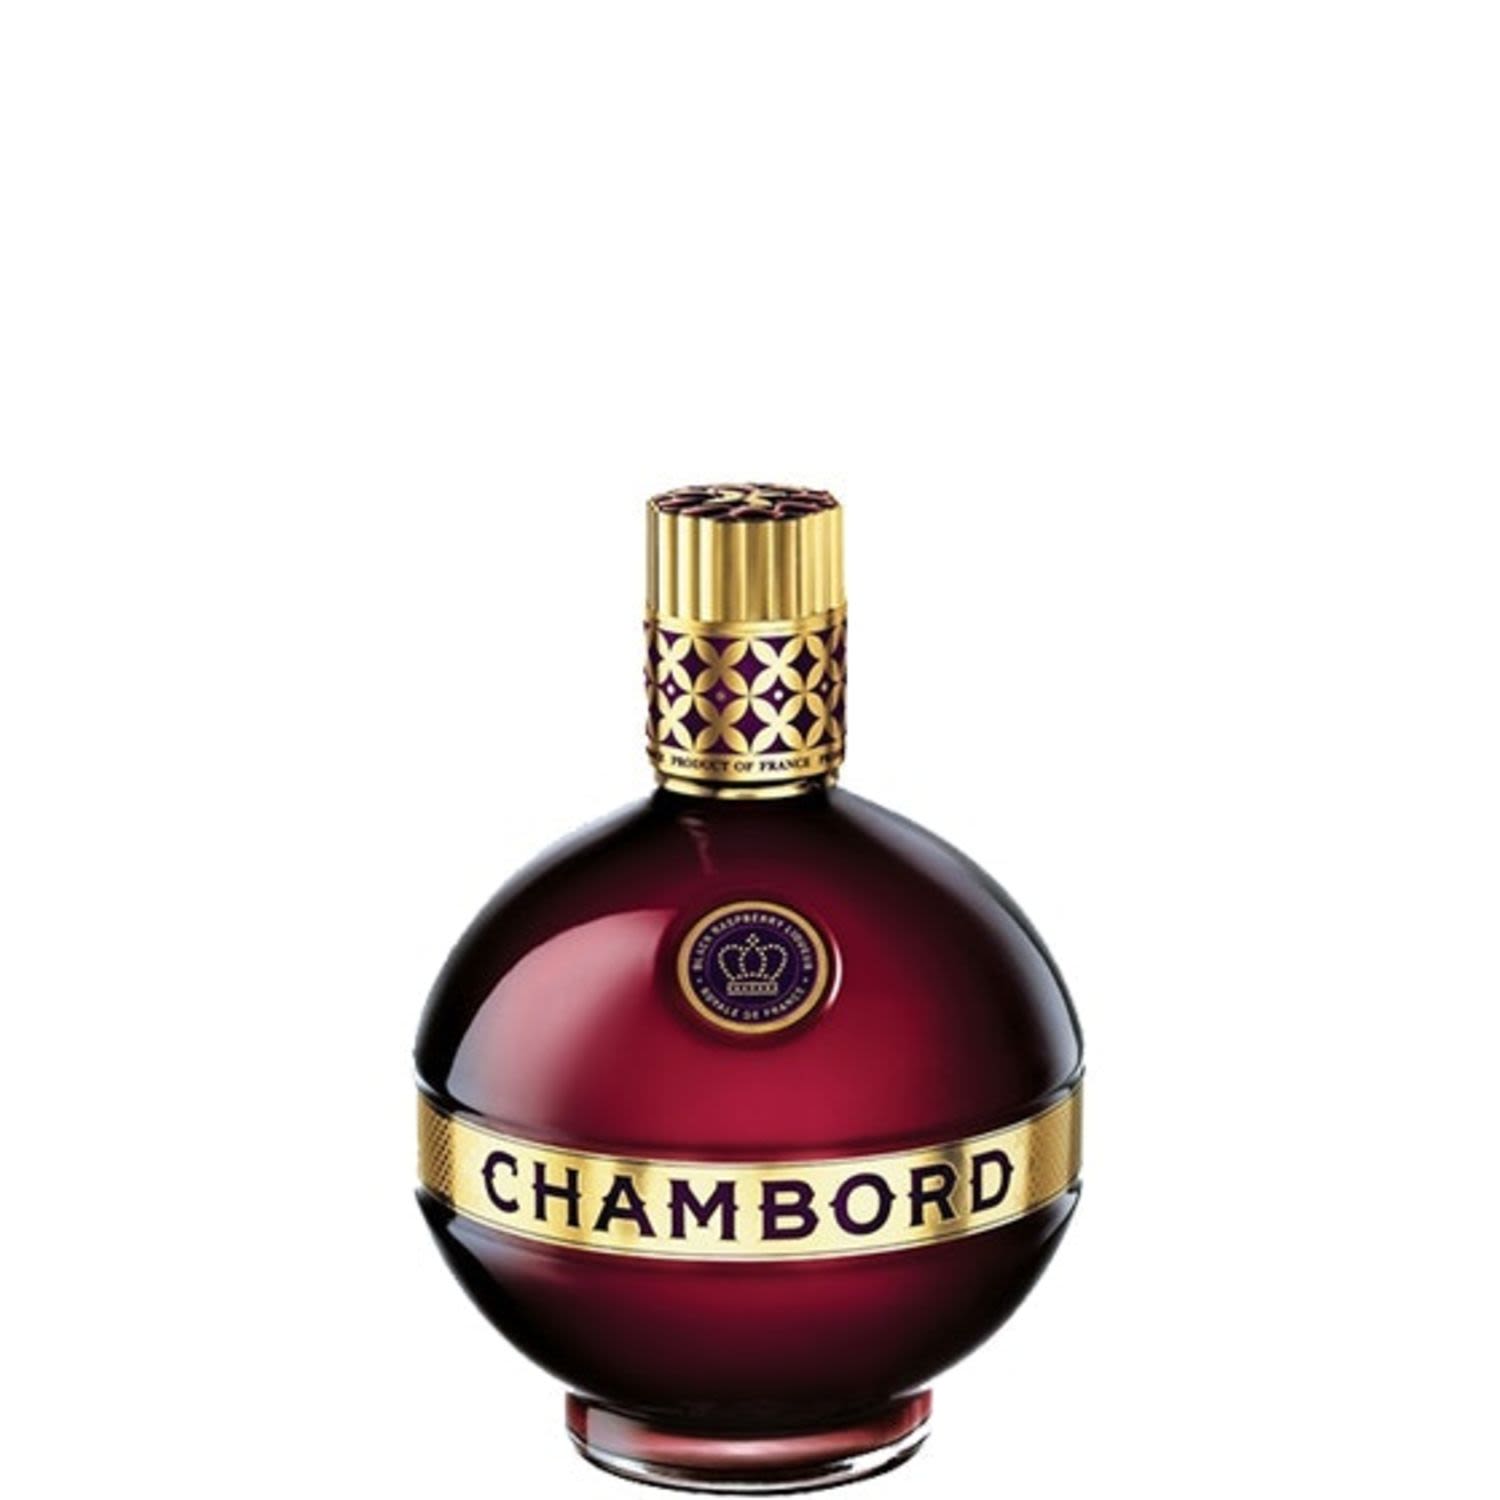 Chambord Liqueur 500mL<br /> <br />Alcohol Volume: 16.50%<br /><br />Pack Format: Bottle<br /><br />Standard Drinks: 6.5</br /><br />Pack Type: Bottle<br /><br />Country of Origin: France<br />